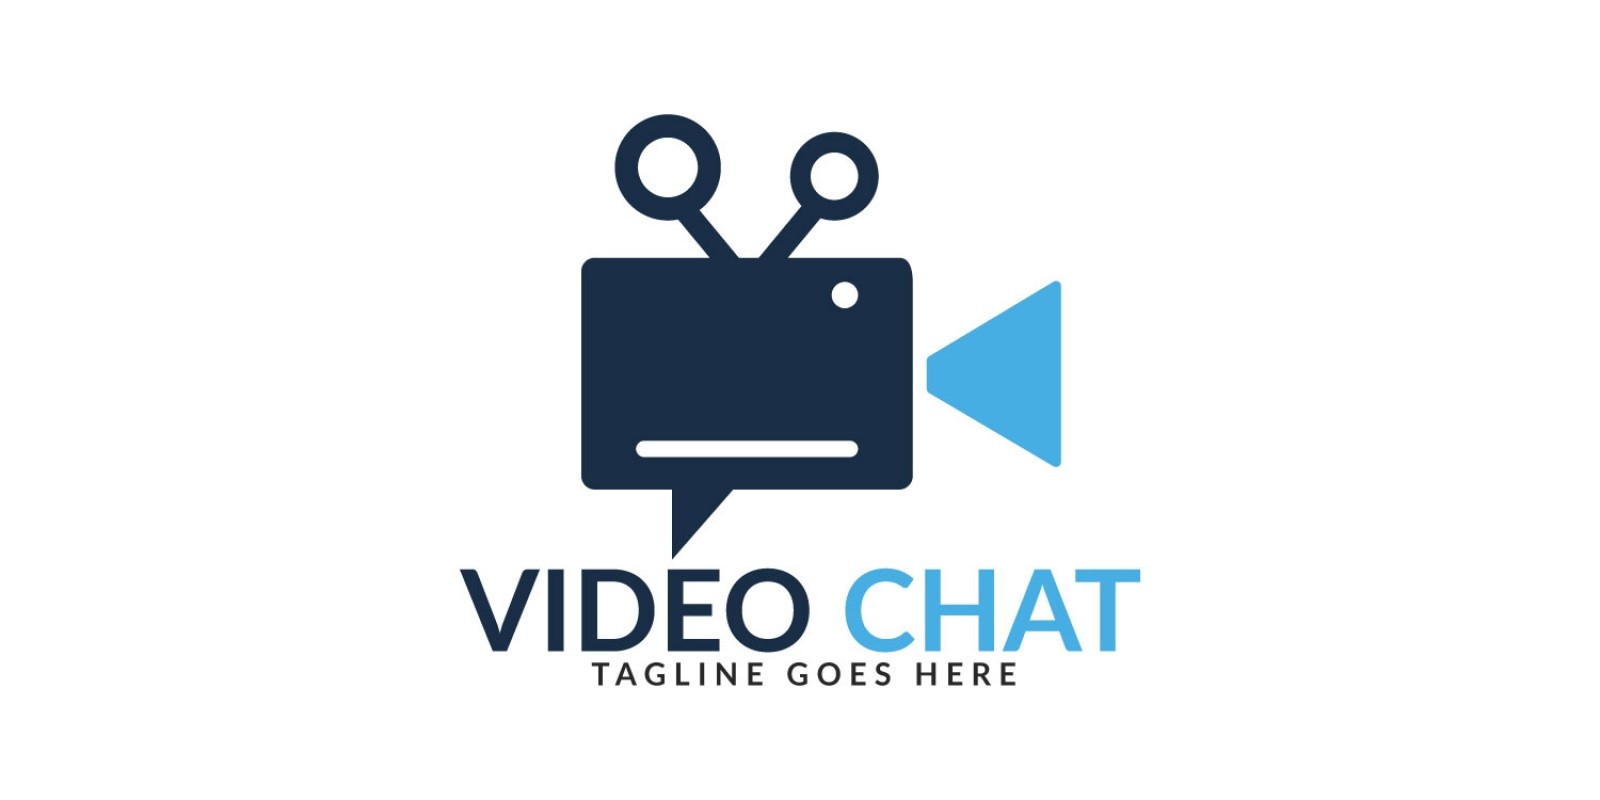 Video Chat Logo Design By IKAlvi Codester.